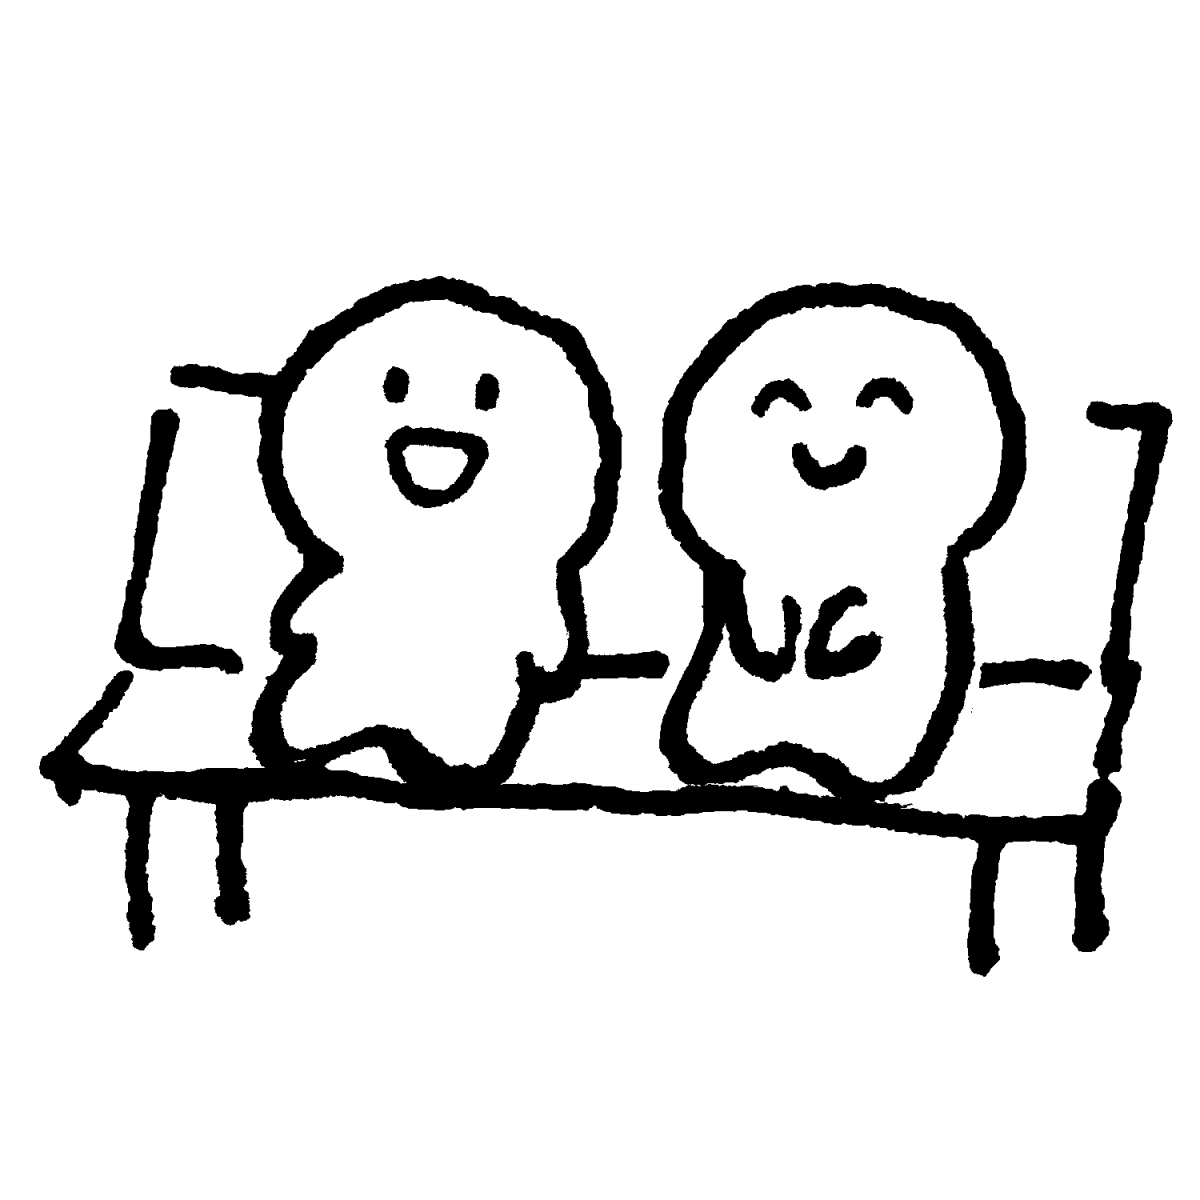 仲良くベンチのイラスト / Sitting on a bench together in good humor. Illustration